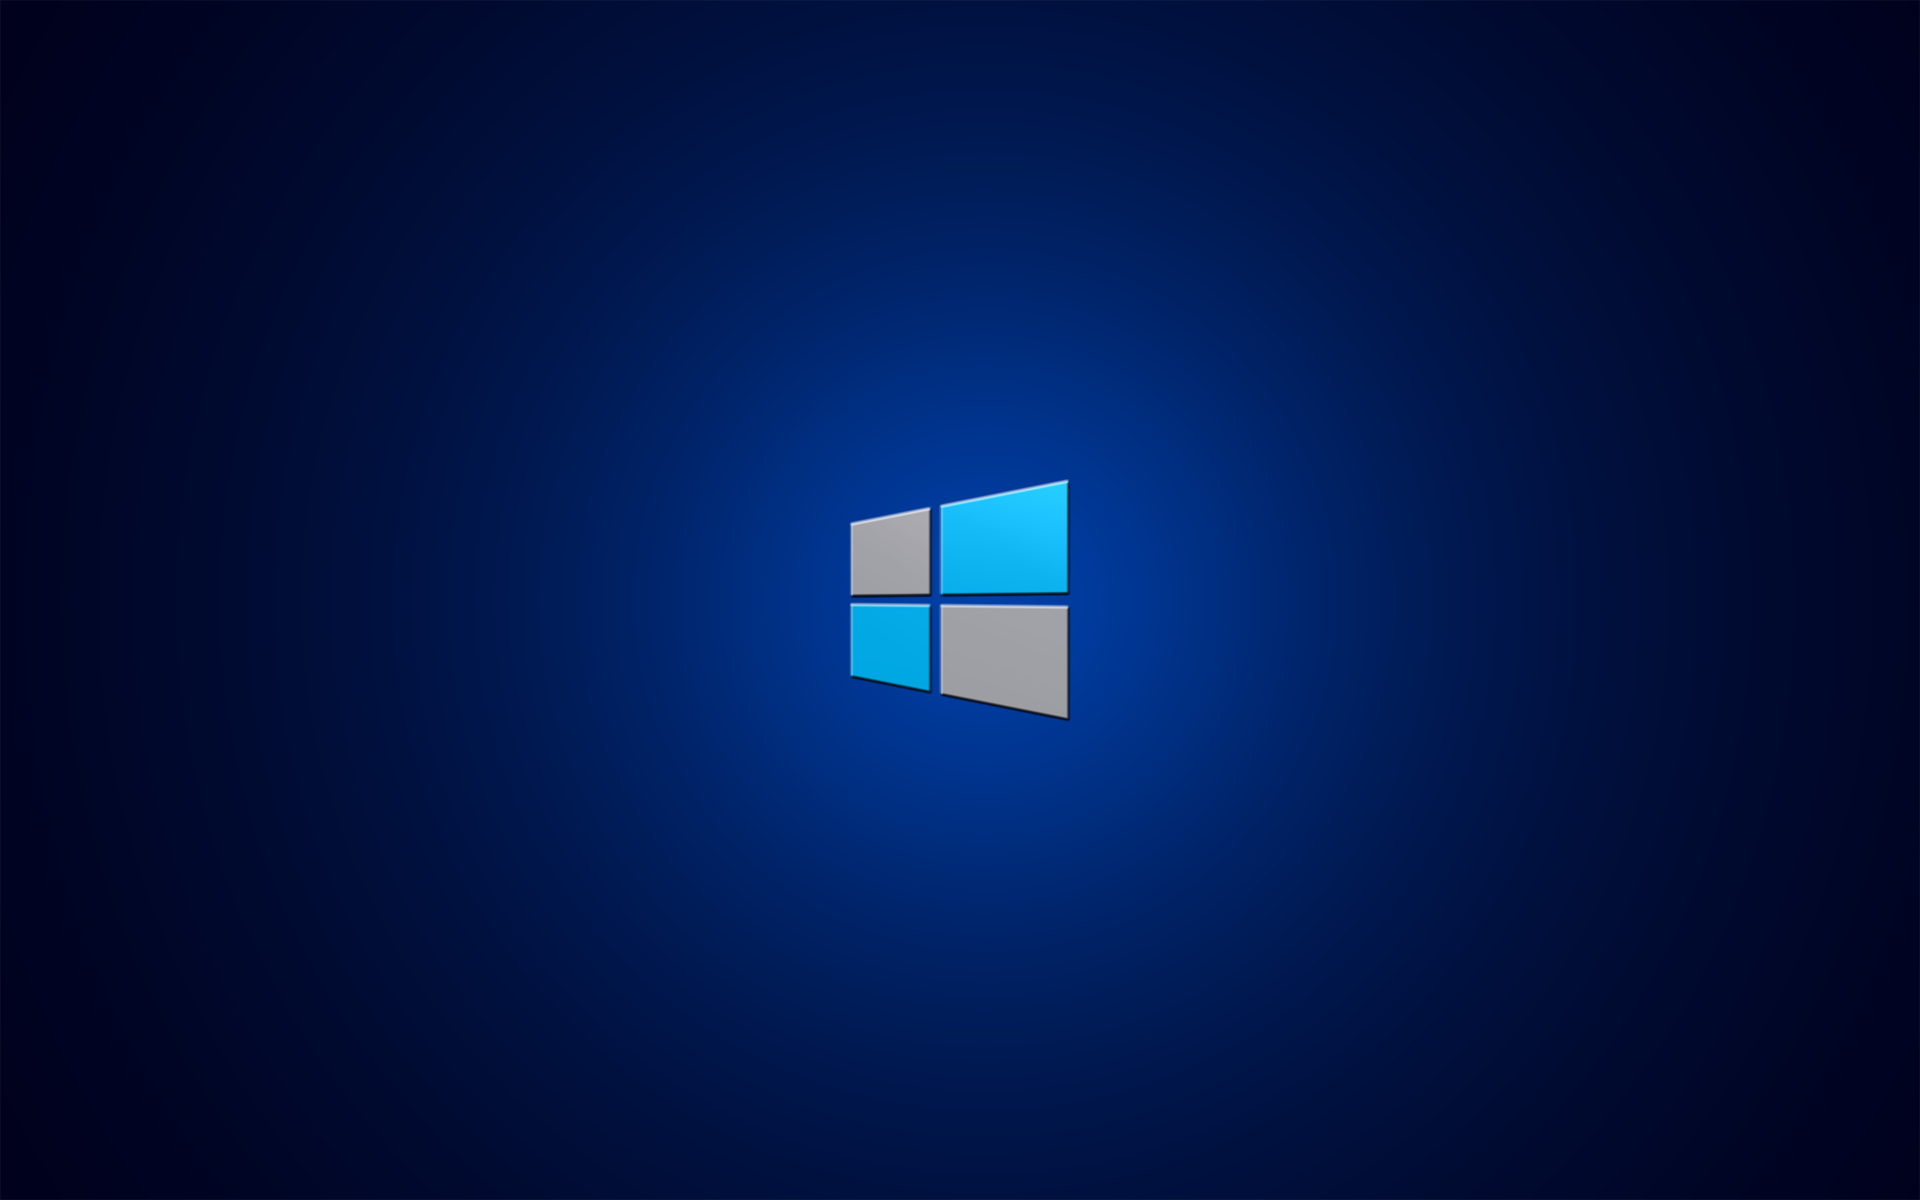 Windows Background Image